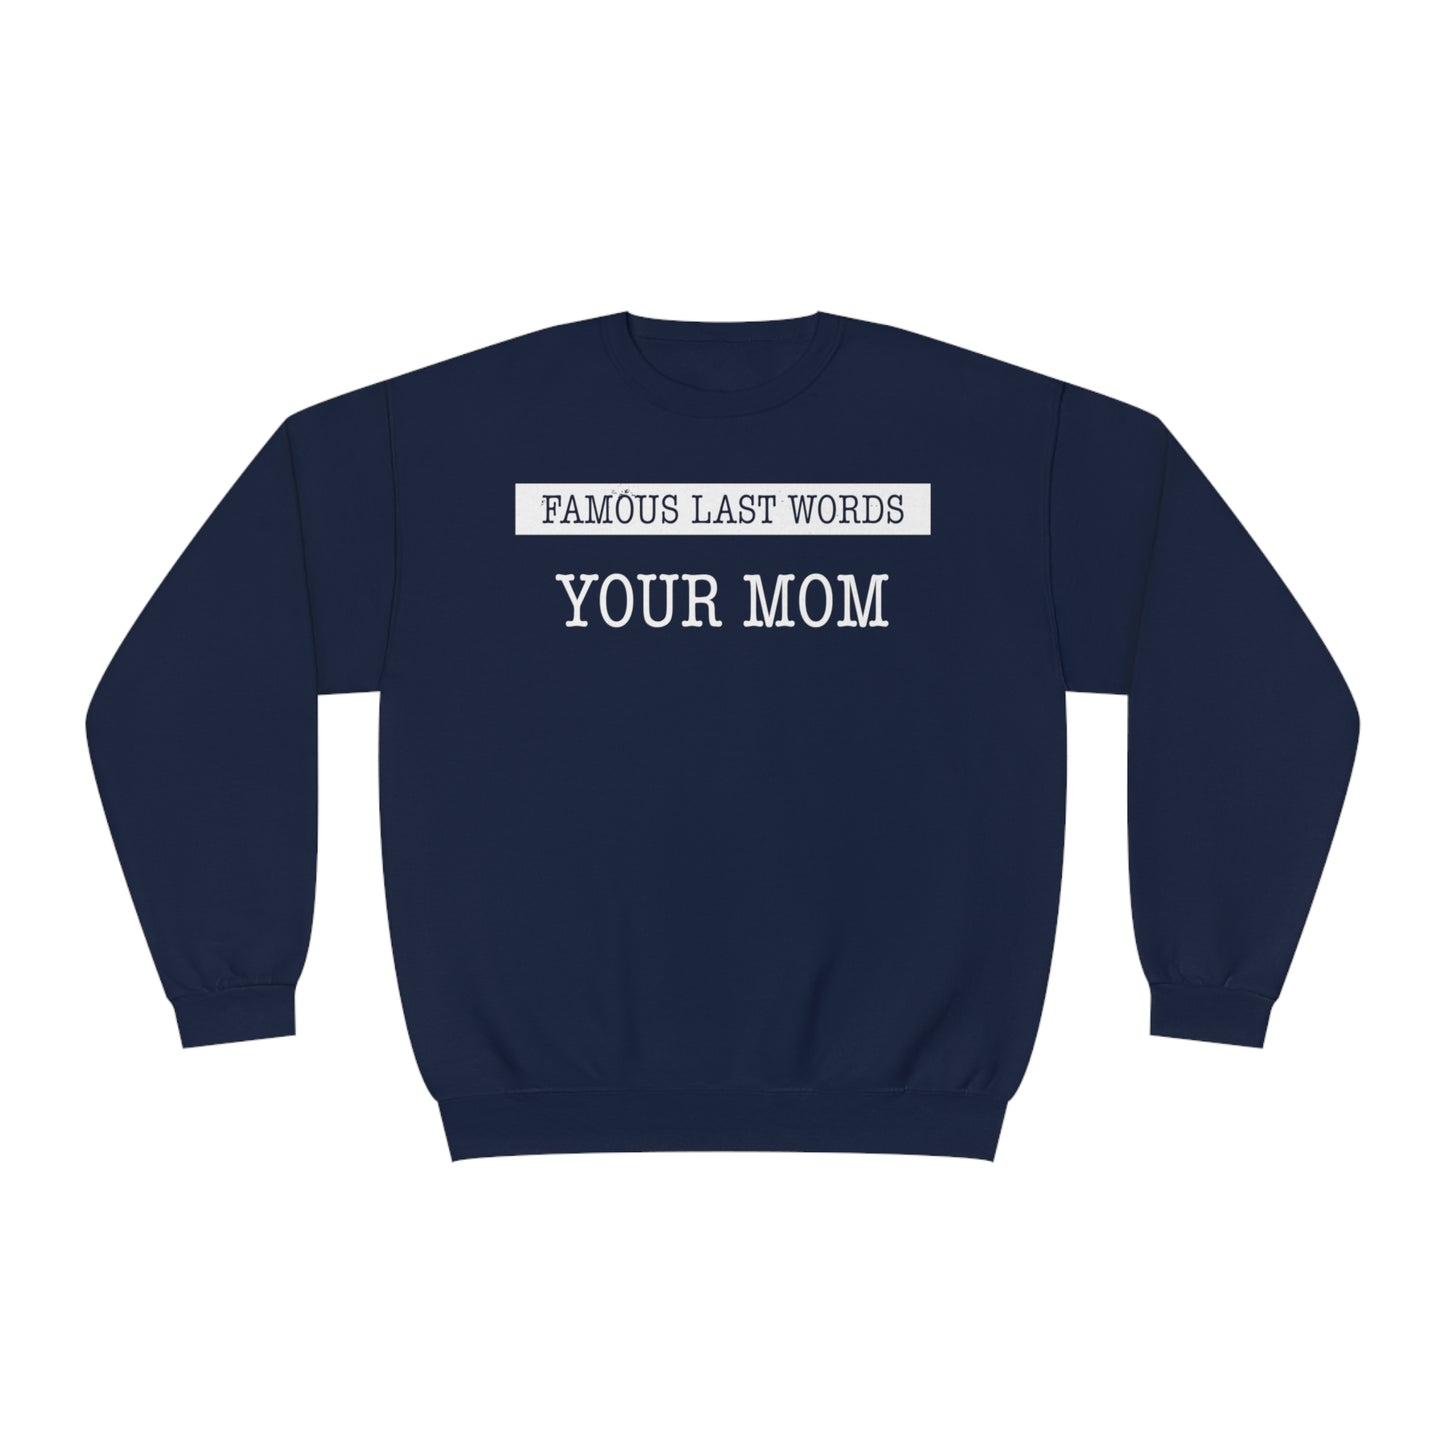 FLW "Your Mom" Sweatshirt